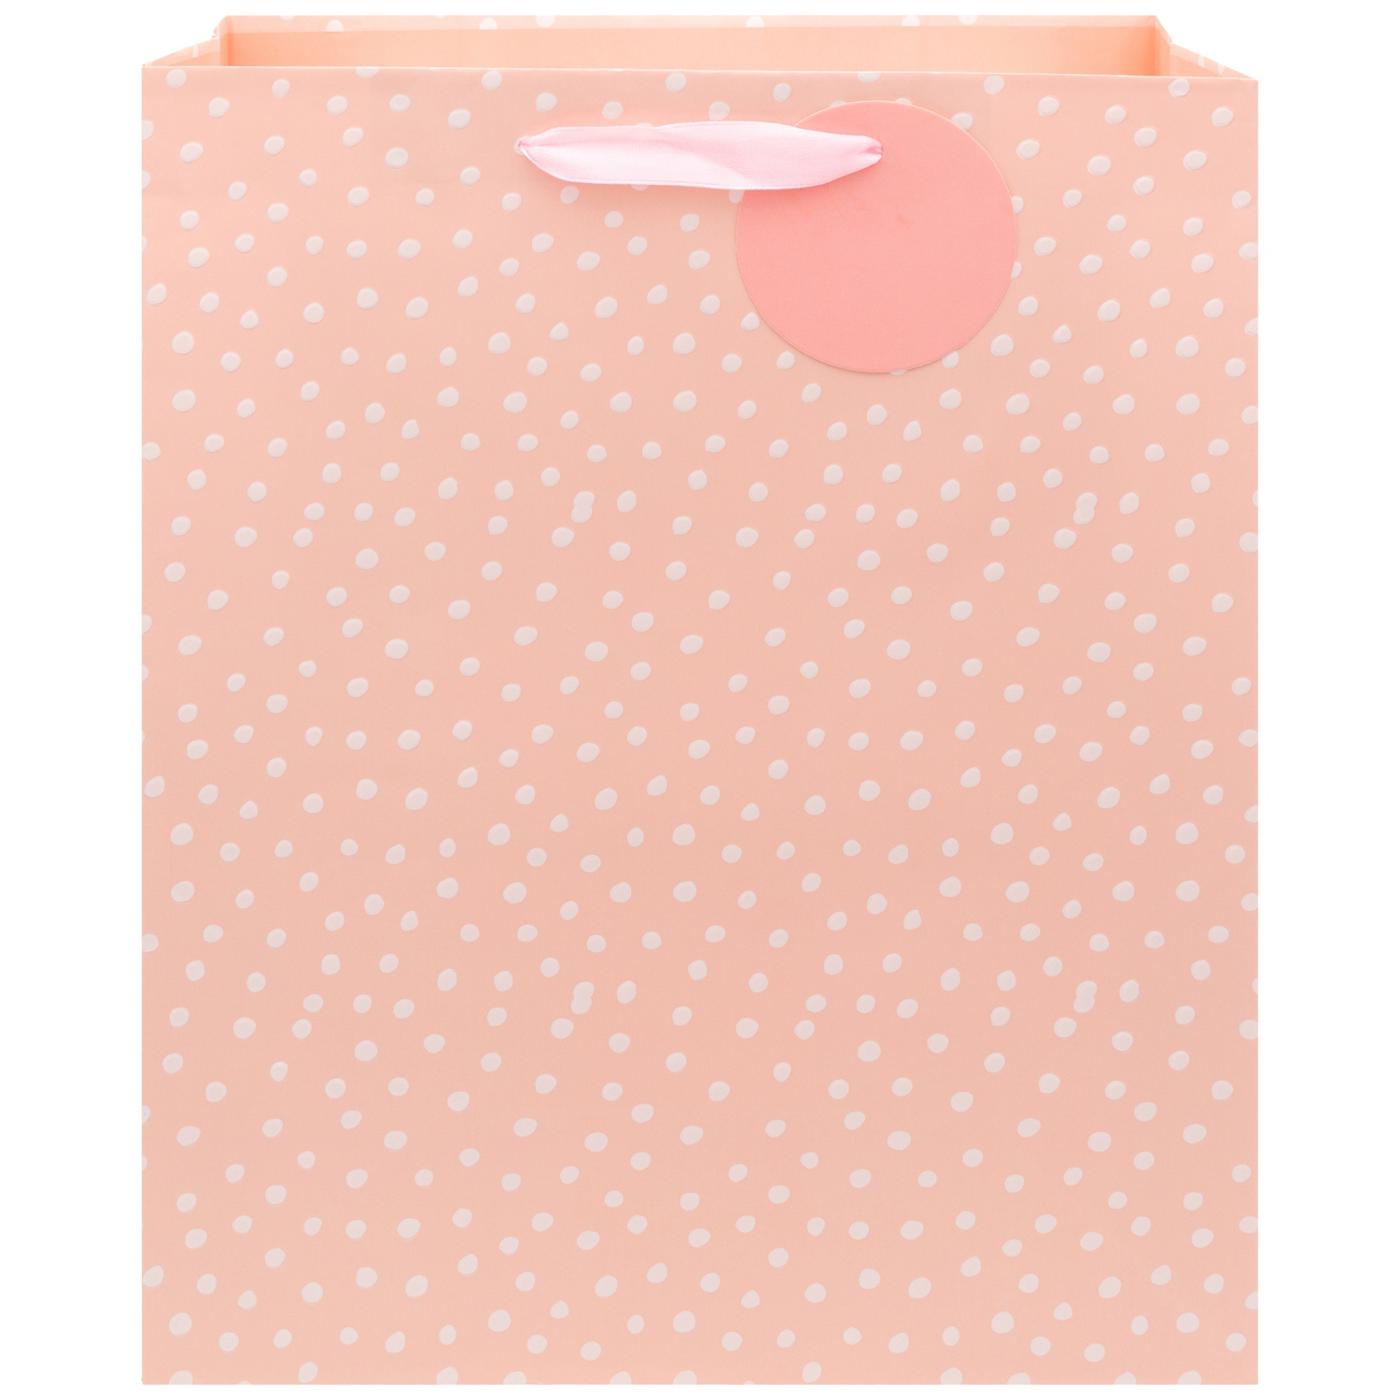 IG Design Pink Dots Paper Gift Bag; image 1 of 2